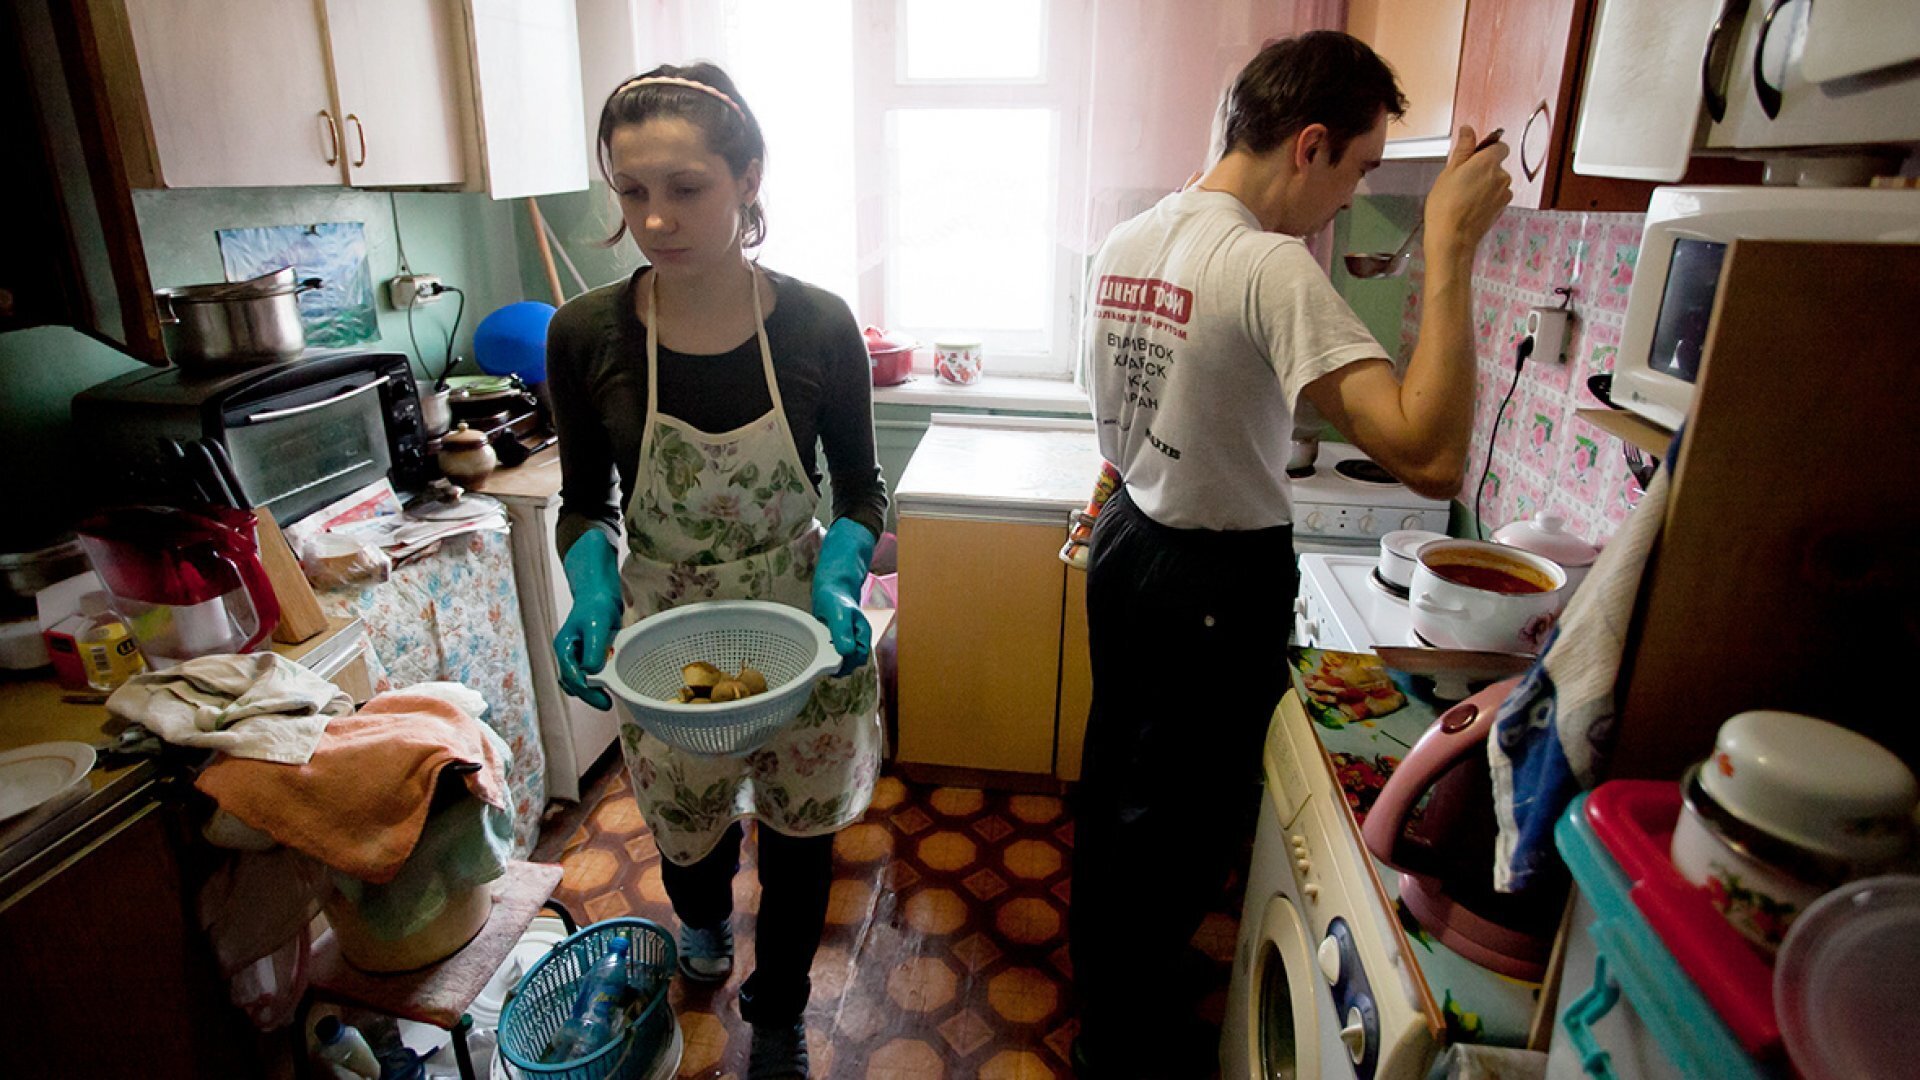 Бедная семья жены. Бедная семья. Современный быт. Обычная жизнь в российских квартирах. Квартира бедной семьи.